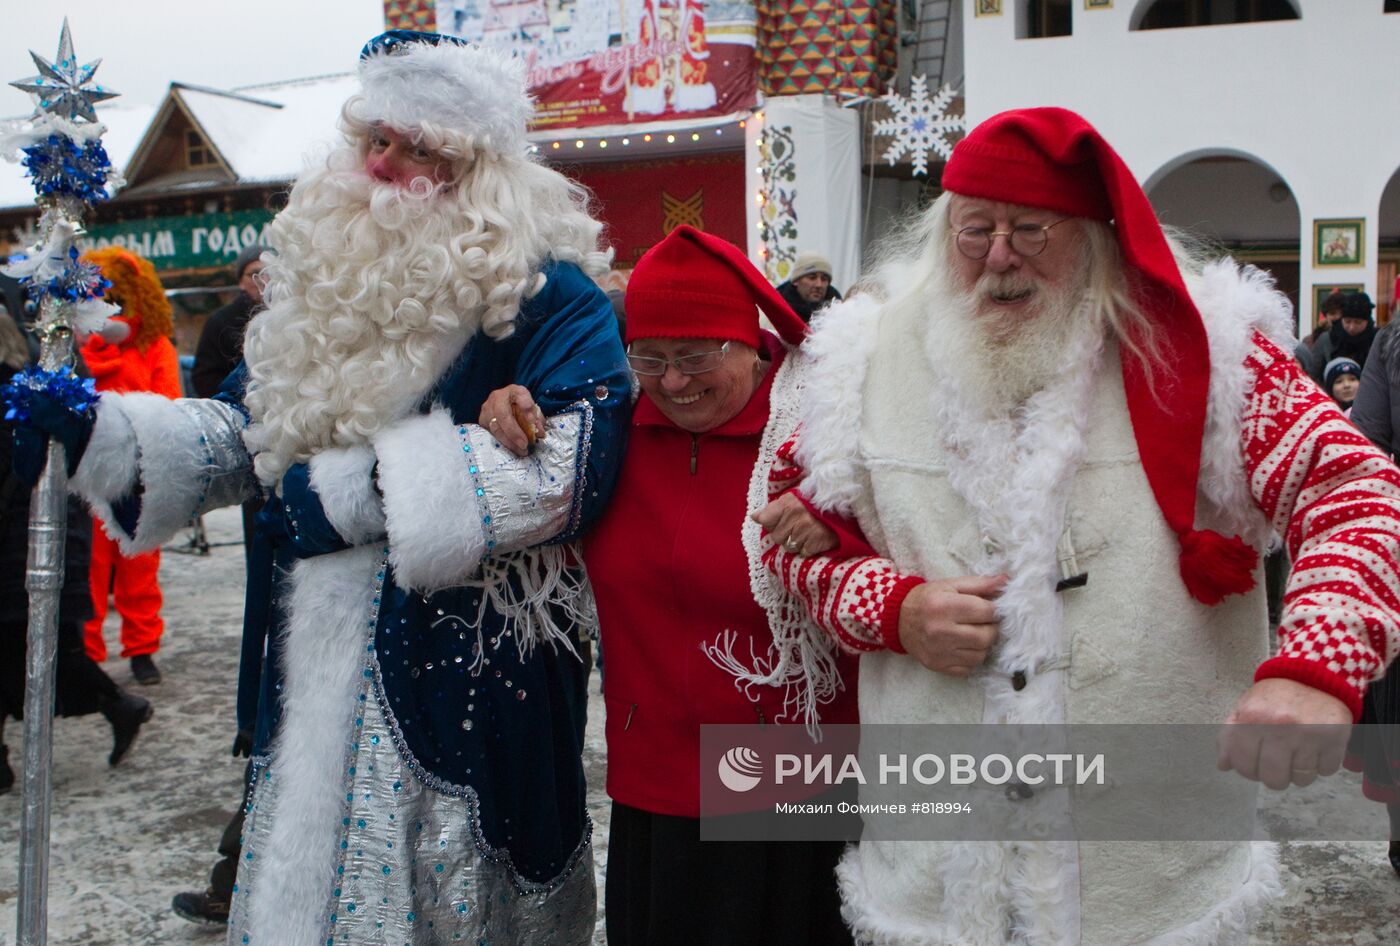 Российский Дед Мороз и норвежский Юлениссен с супругой